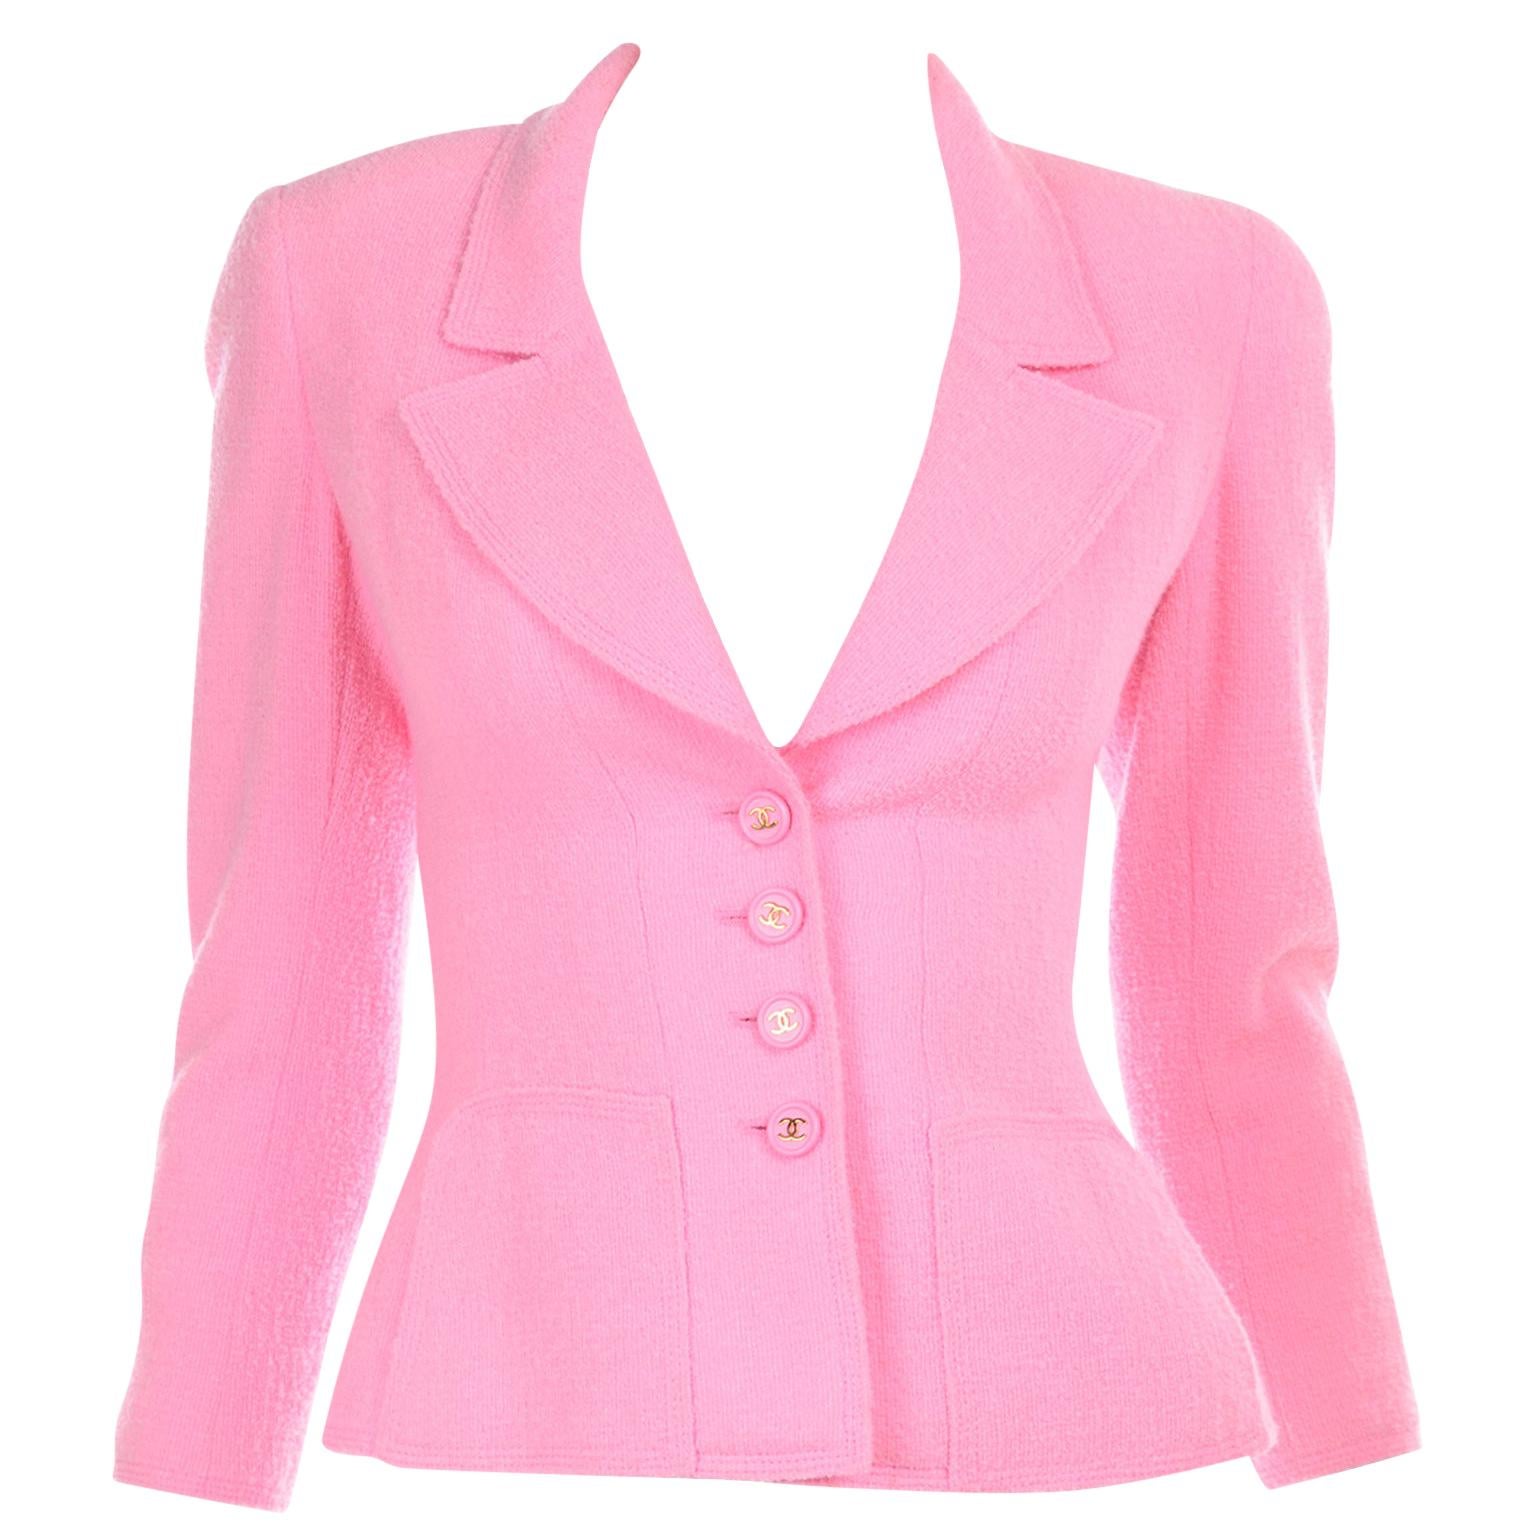 Spring Summer 1997 Chanel Pink Boucle Vintage Blazer Jacket